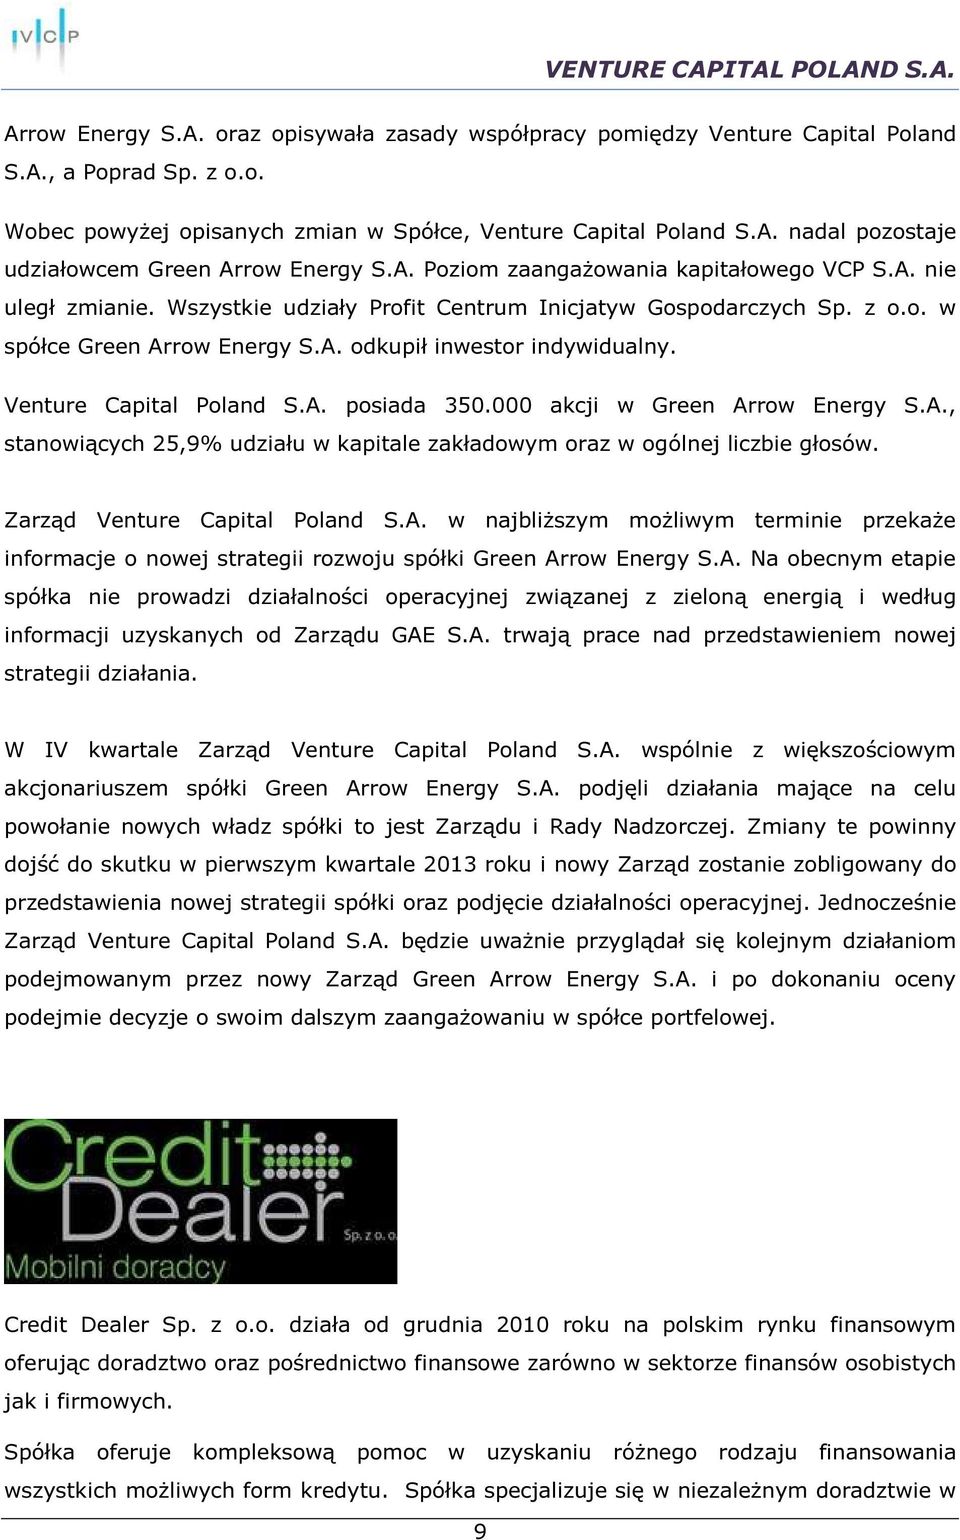 Venture Capital Poland S.A. posiada 350.000 akcji w Green Arrow Energy S.A., stanowiących 25,9% udziału w kapitale zakładowym oraz w ogólnej liczbie głosów. Zarząd Venture Capital Poland S.A. w najbliższym możliwym terminie przekaże informacje o nowej strategii rozwoju spółki Green Arrow Energy S.